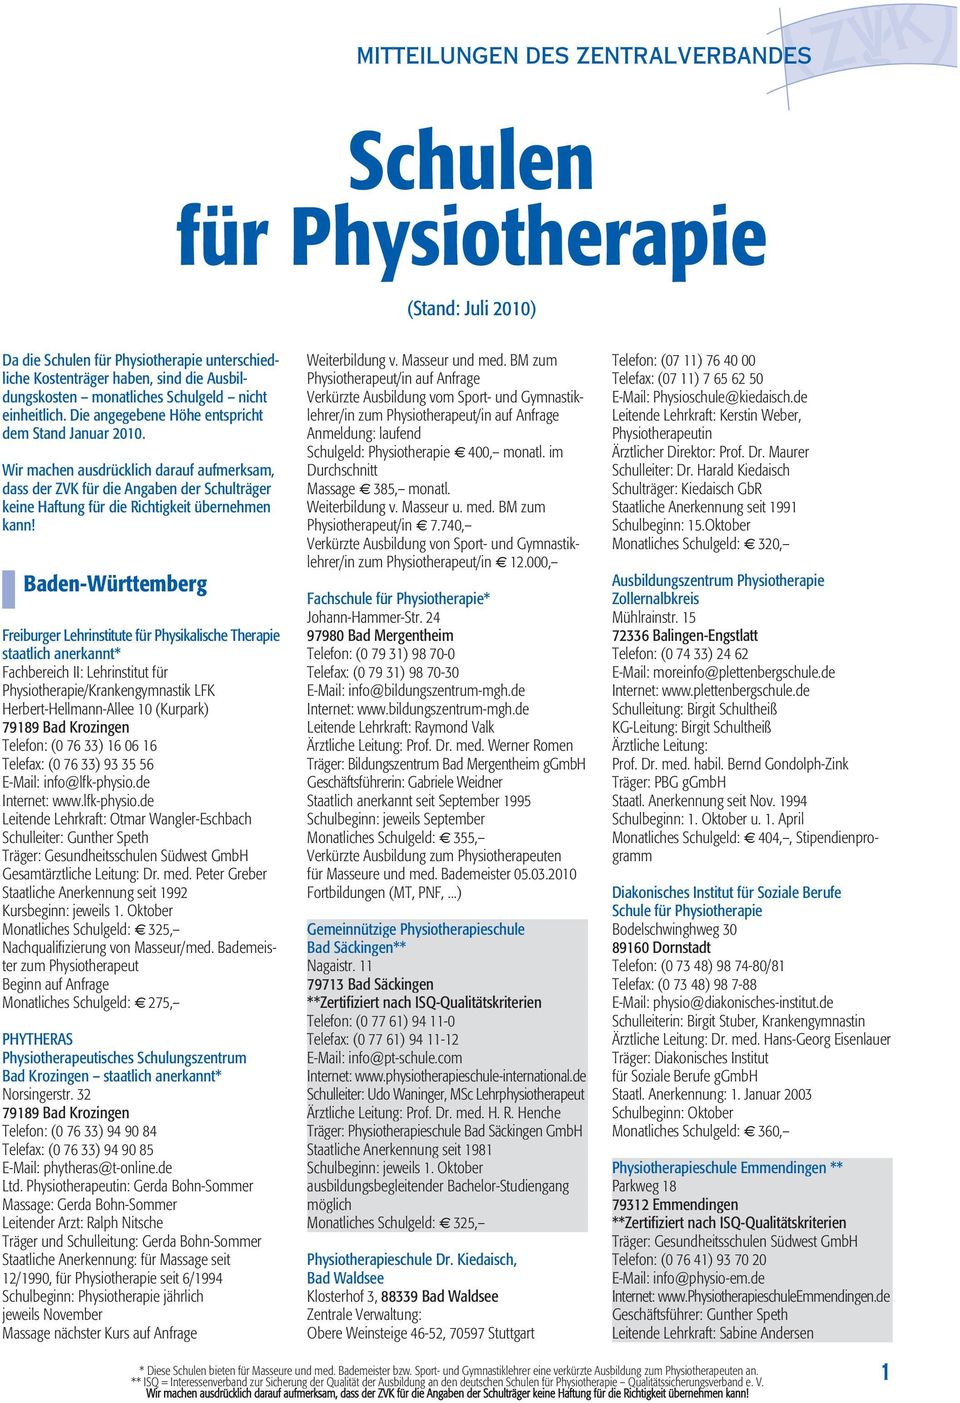 Baden-Württemberg Freiburger Lehrinstitute für Physikalische Therapie staatlich anerkannt* Fachbereich II: Lehrinstitut für Physiotherapie/Krankengymnastik LFK Herbert-Hellmann-Allee 10 (Kurpark)